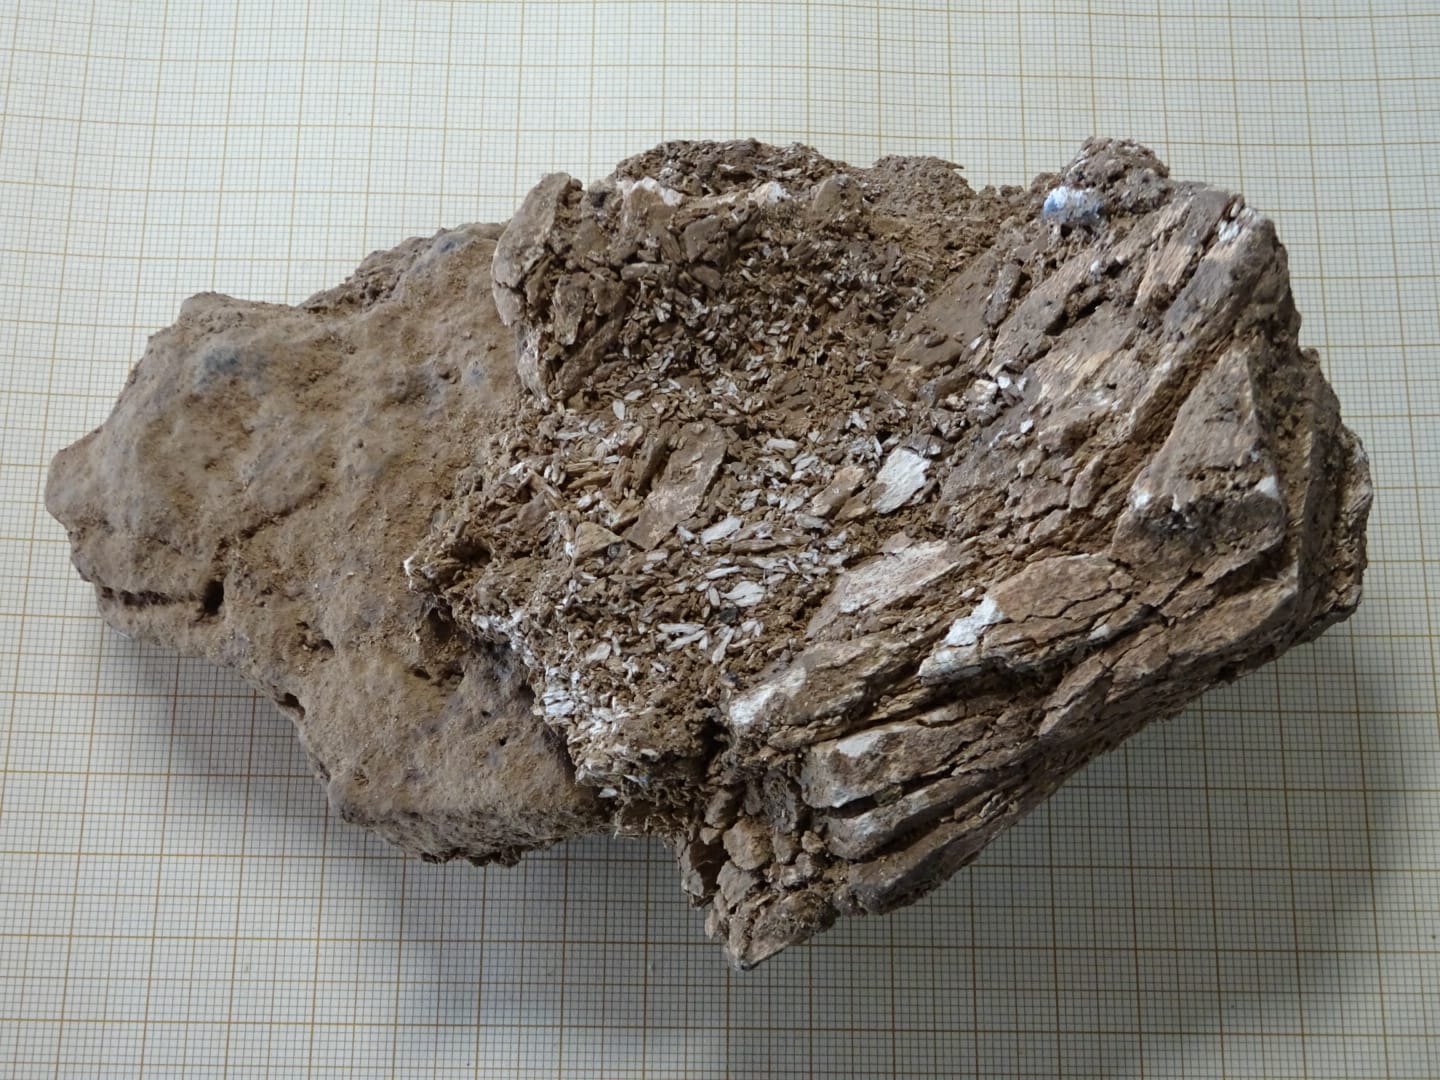 Marfil zatia, mamut letagin batetik datorrena, Aurignac aldikoa (33.000-40.000 urte)